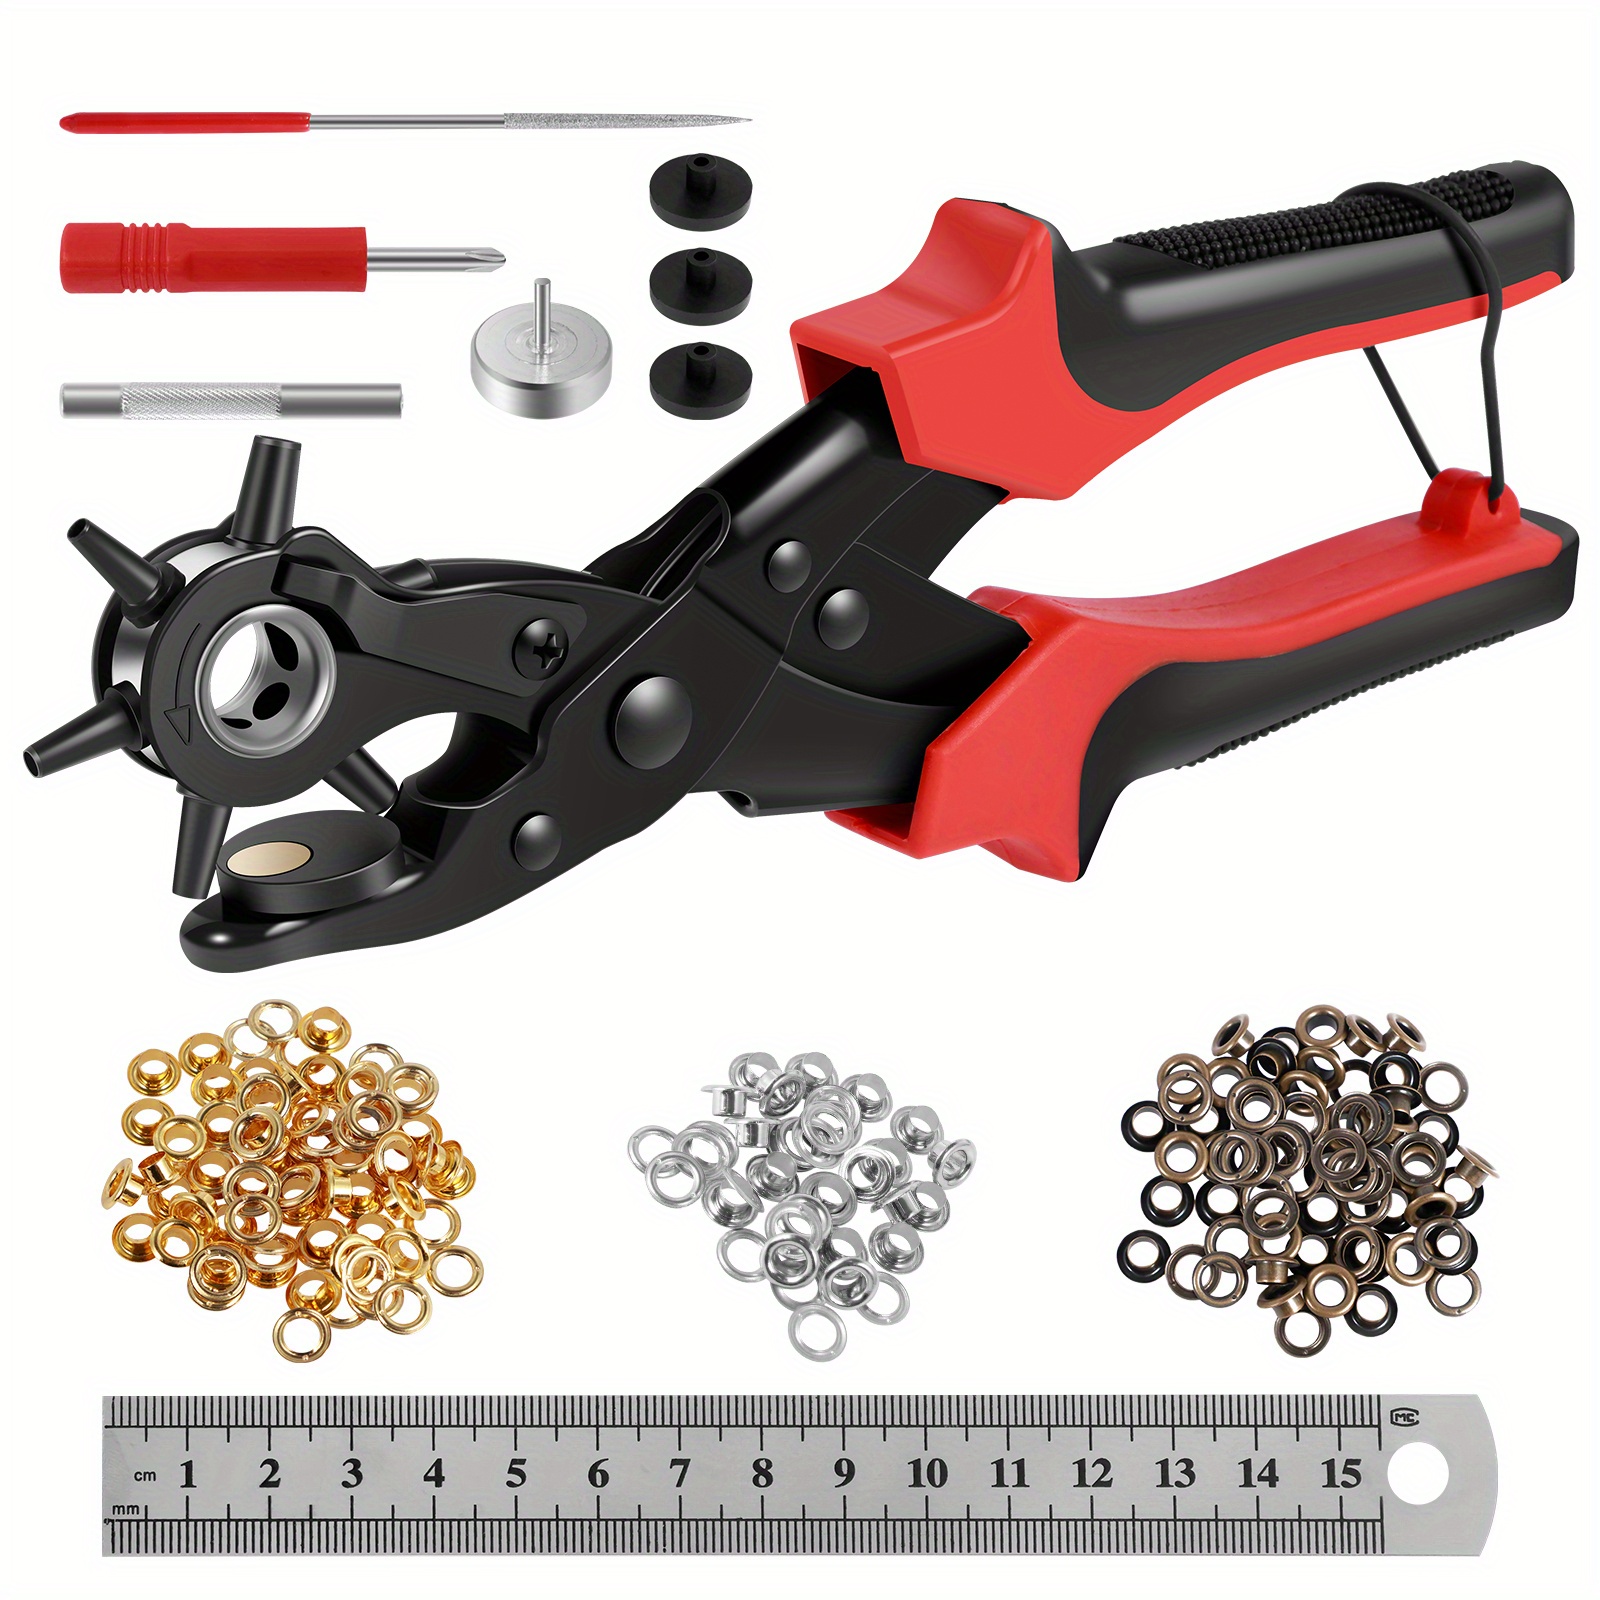 Kit de herramientas para perforar agujeros, máquina de coser con